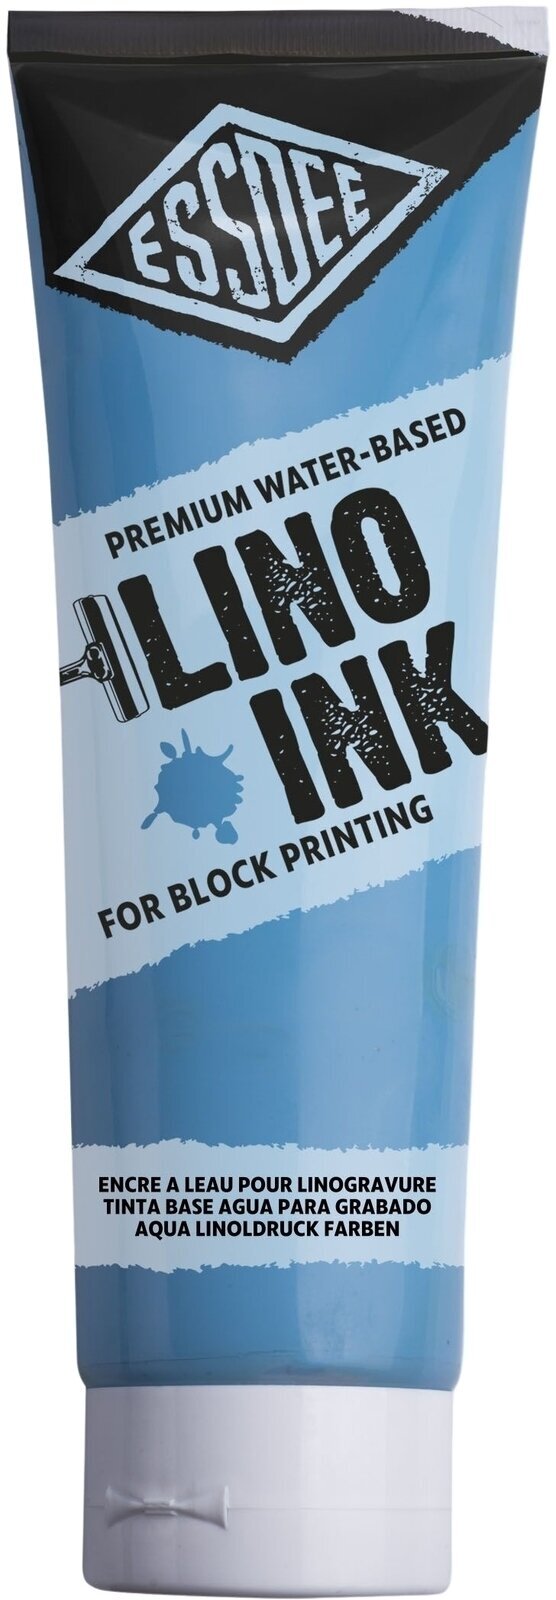 Pintura para linograbado Essdee Block Printing Ink Pintura para linograbado Sky Blue 300 ml